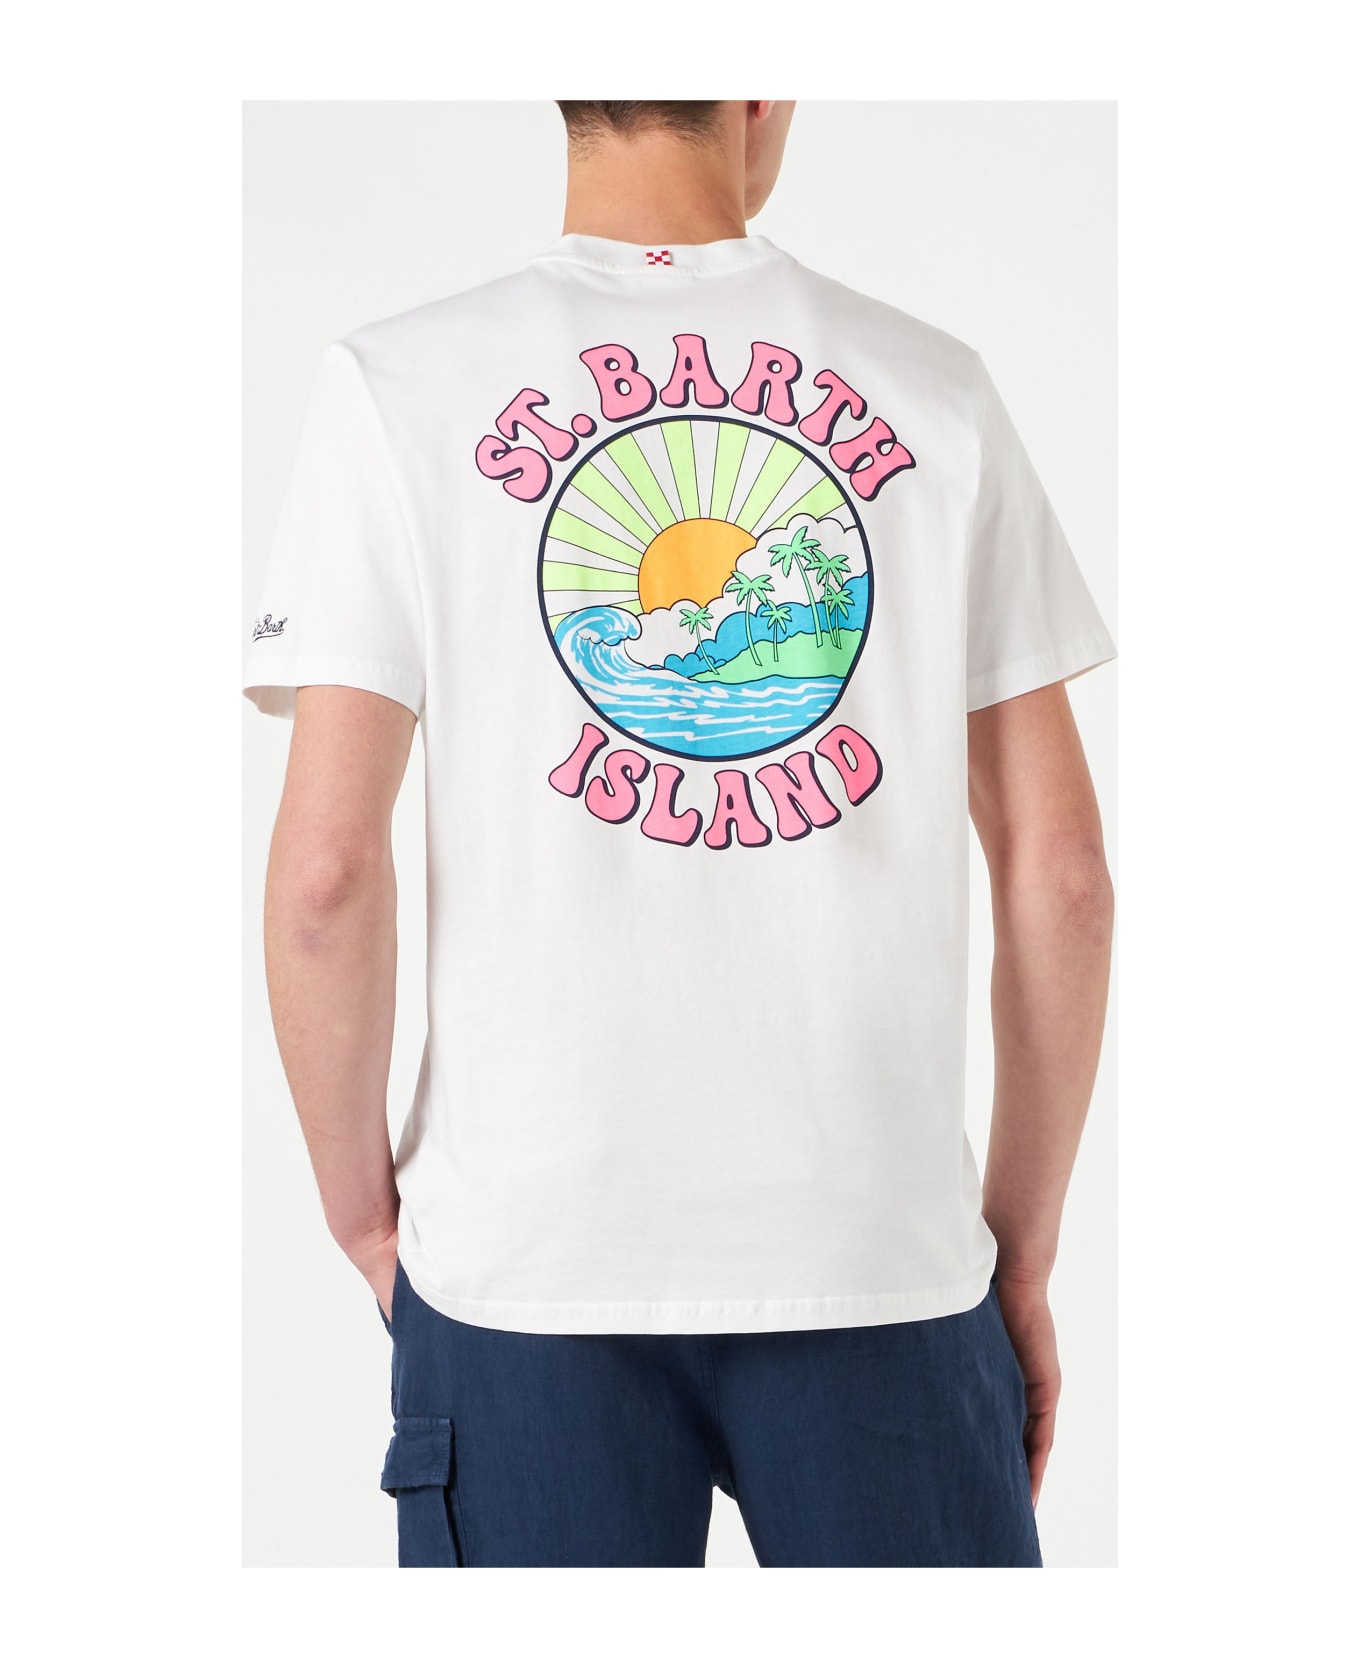 MC2 Saint Barth Man Cotton T-shirt With St. Barth Island Print - WHITE